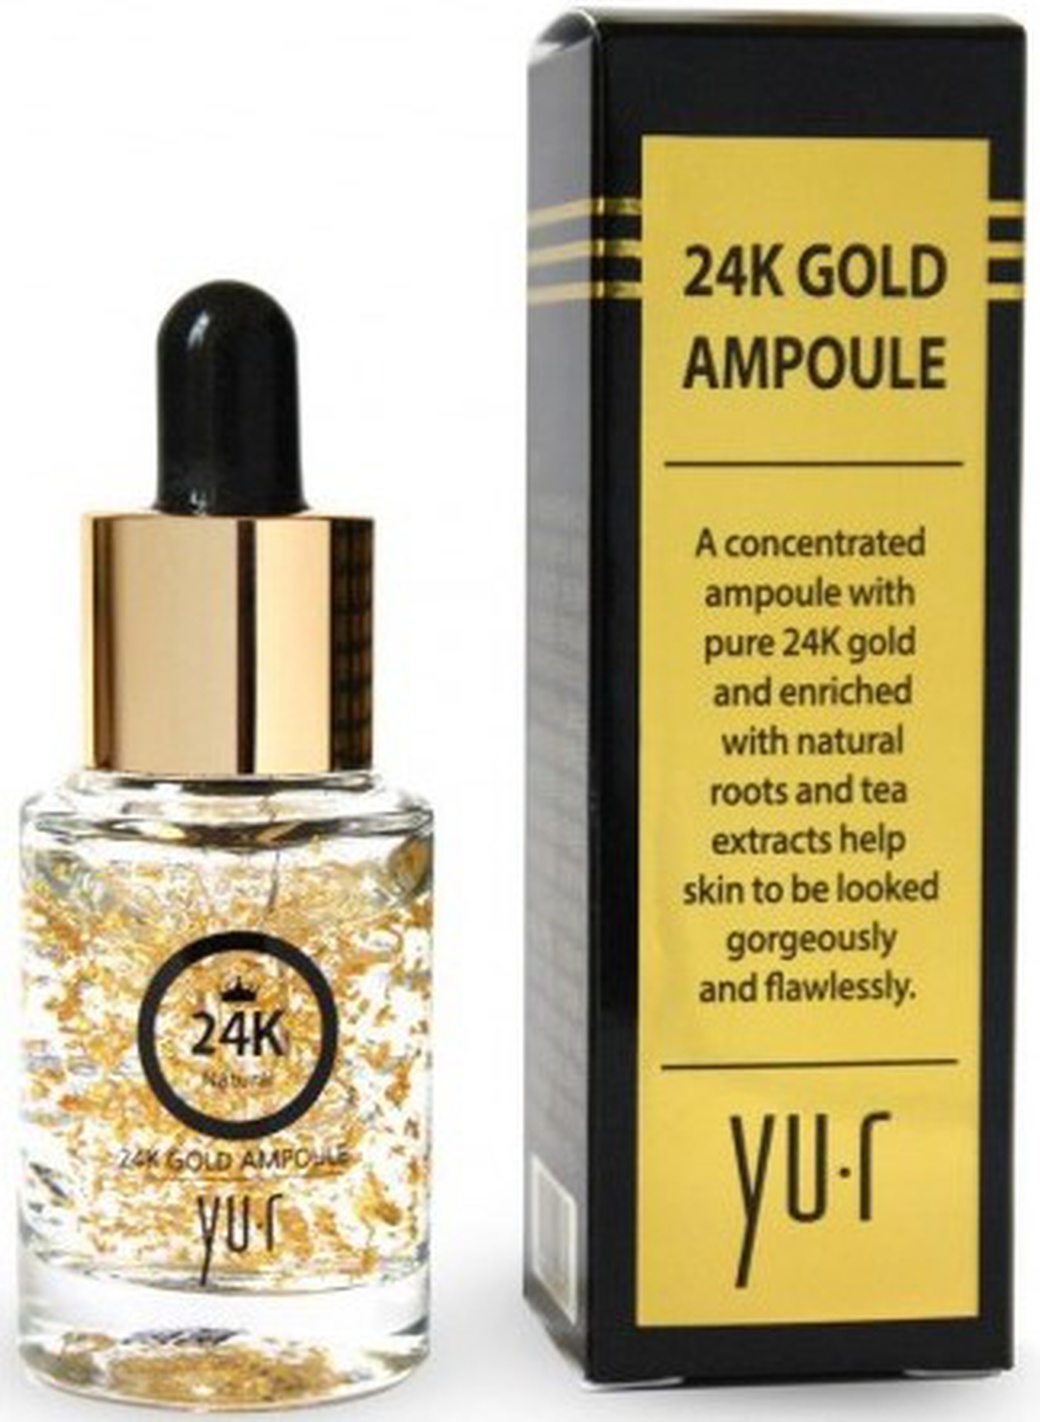 Сыворотка YU-R Premium 24K Gold Ampoule (с коллоидным золотом) 15 мл. фото